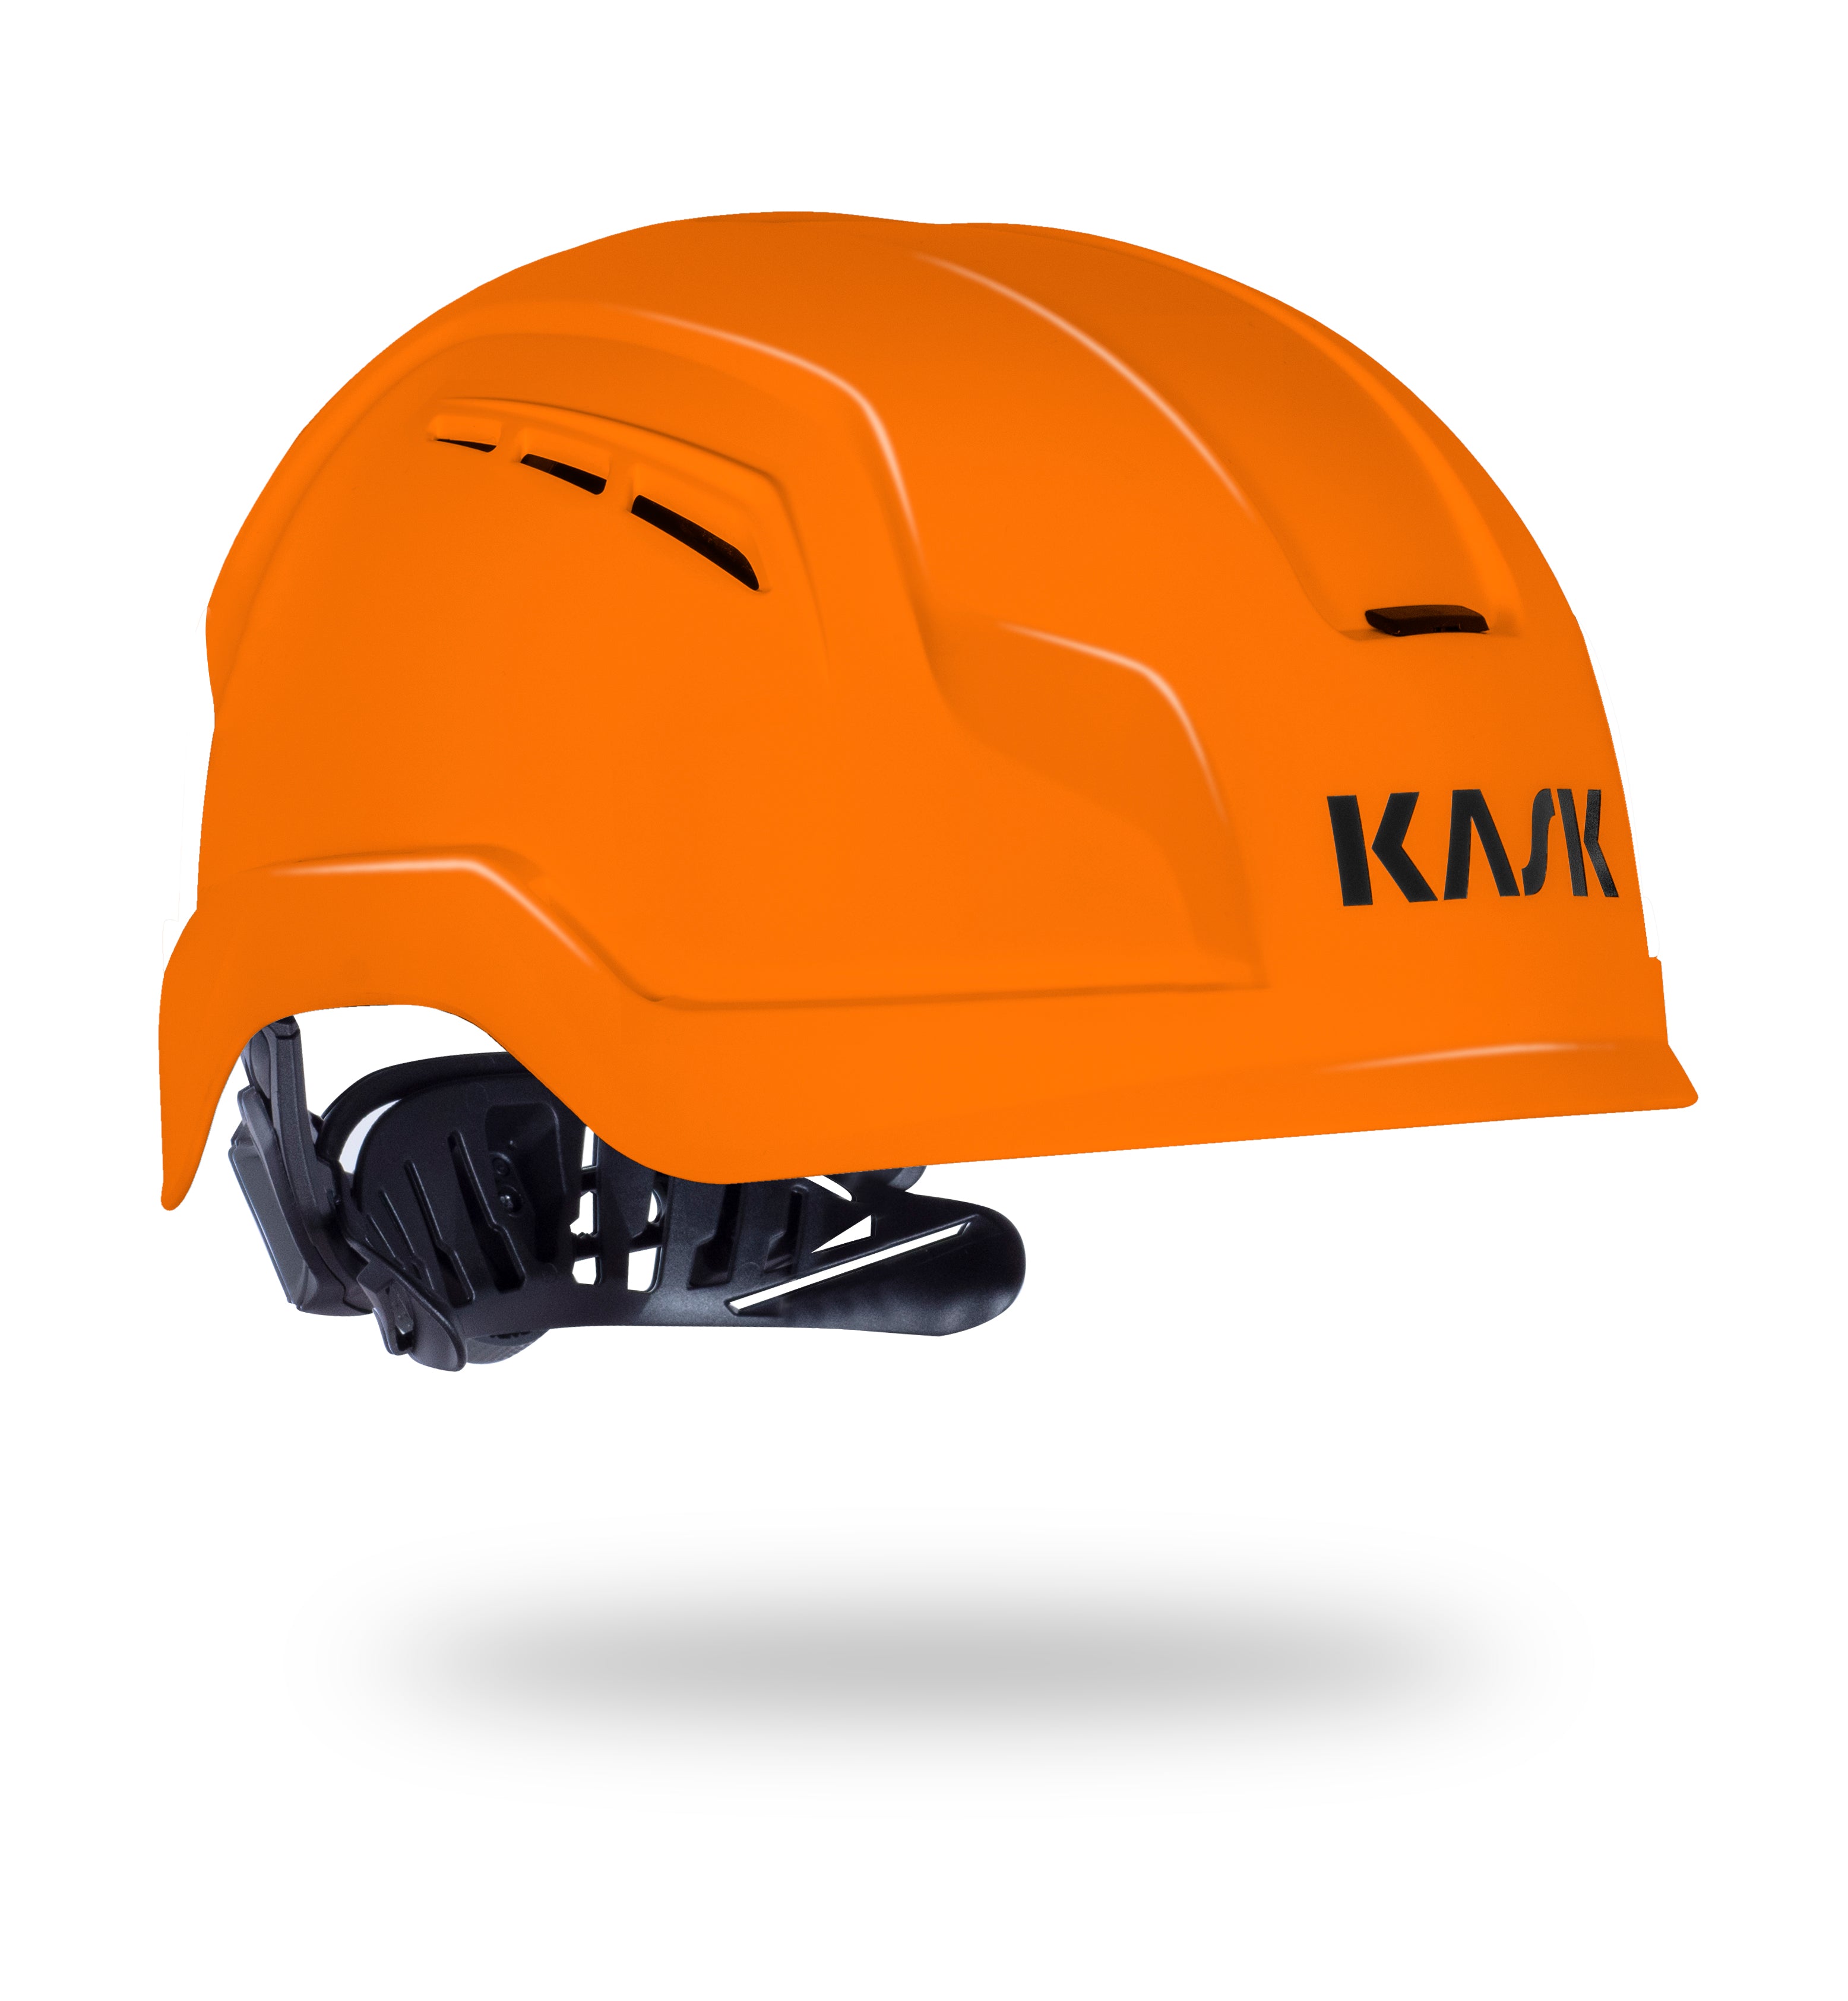 KASK Zenith X BA Air Helmet